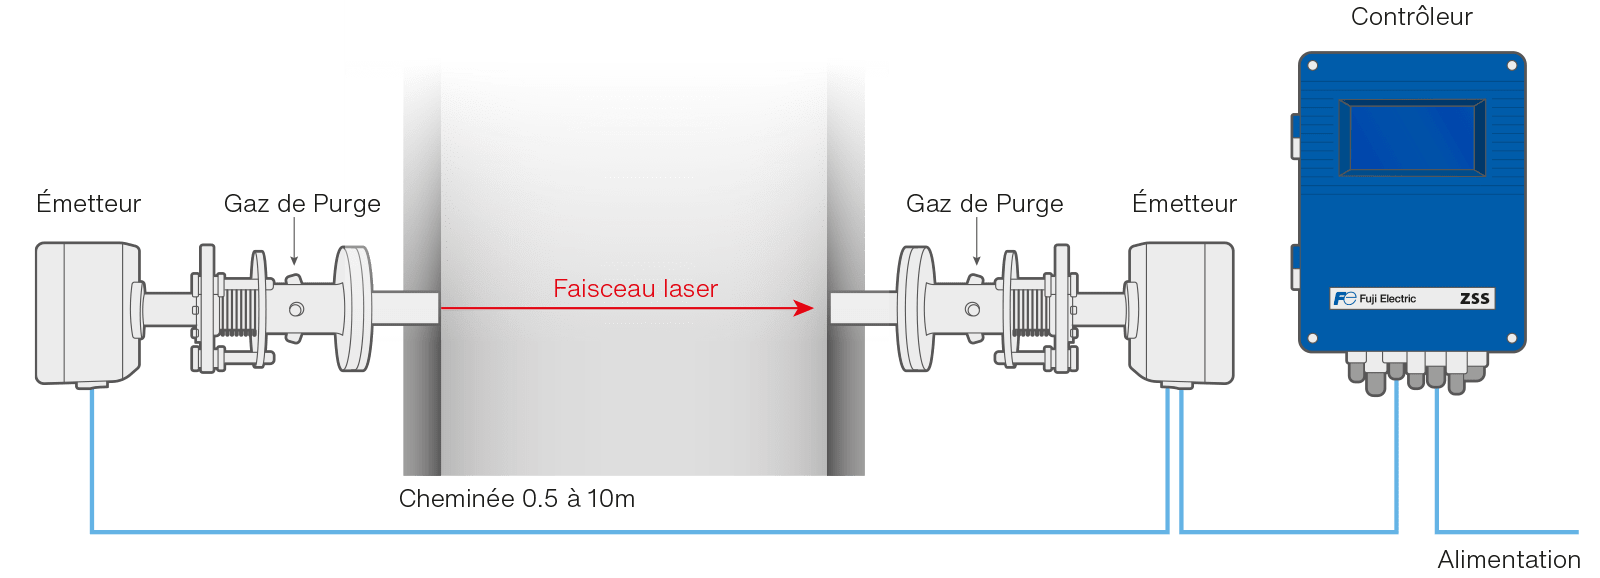 analyser for gas desulphurization schema fr